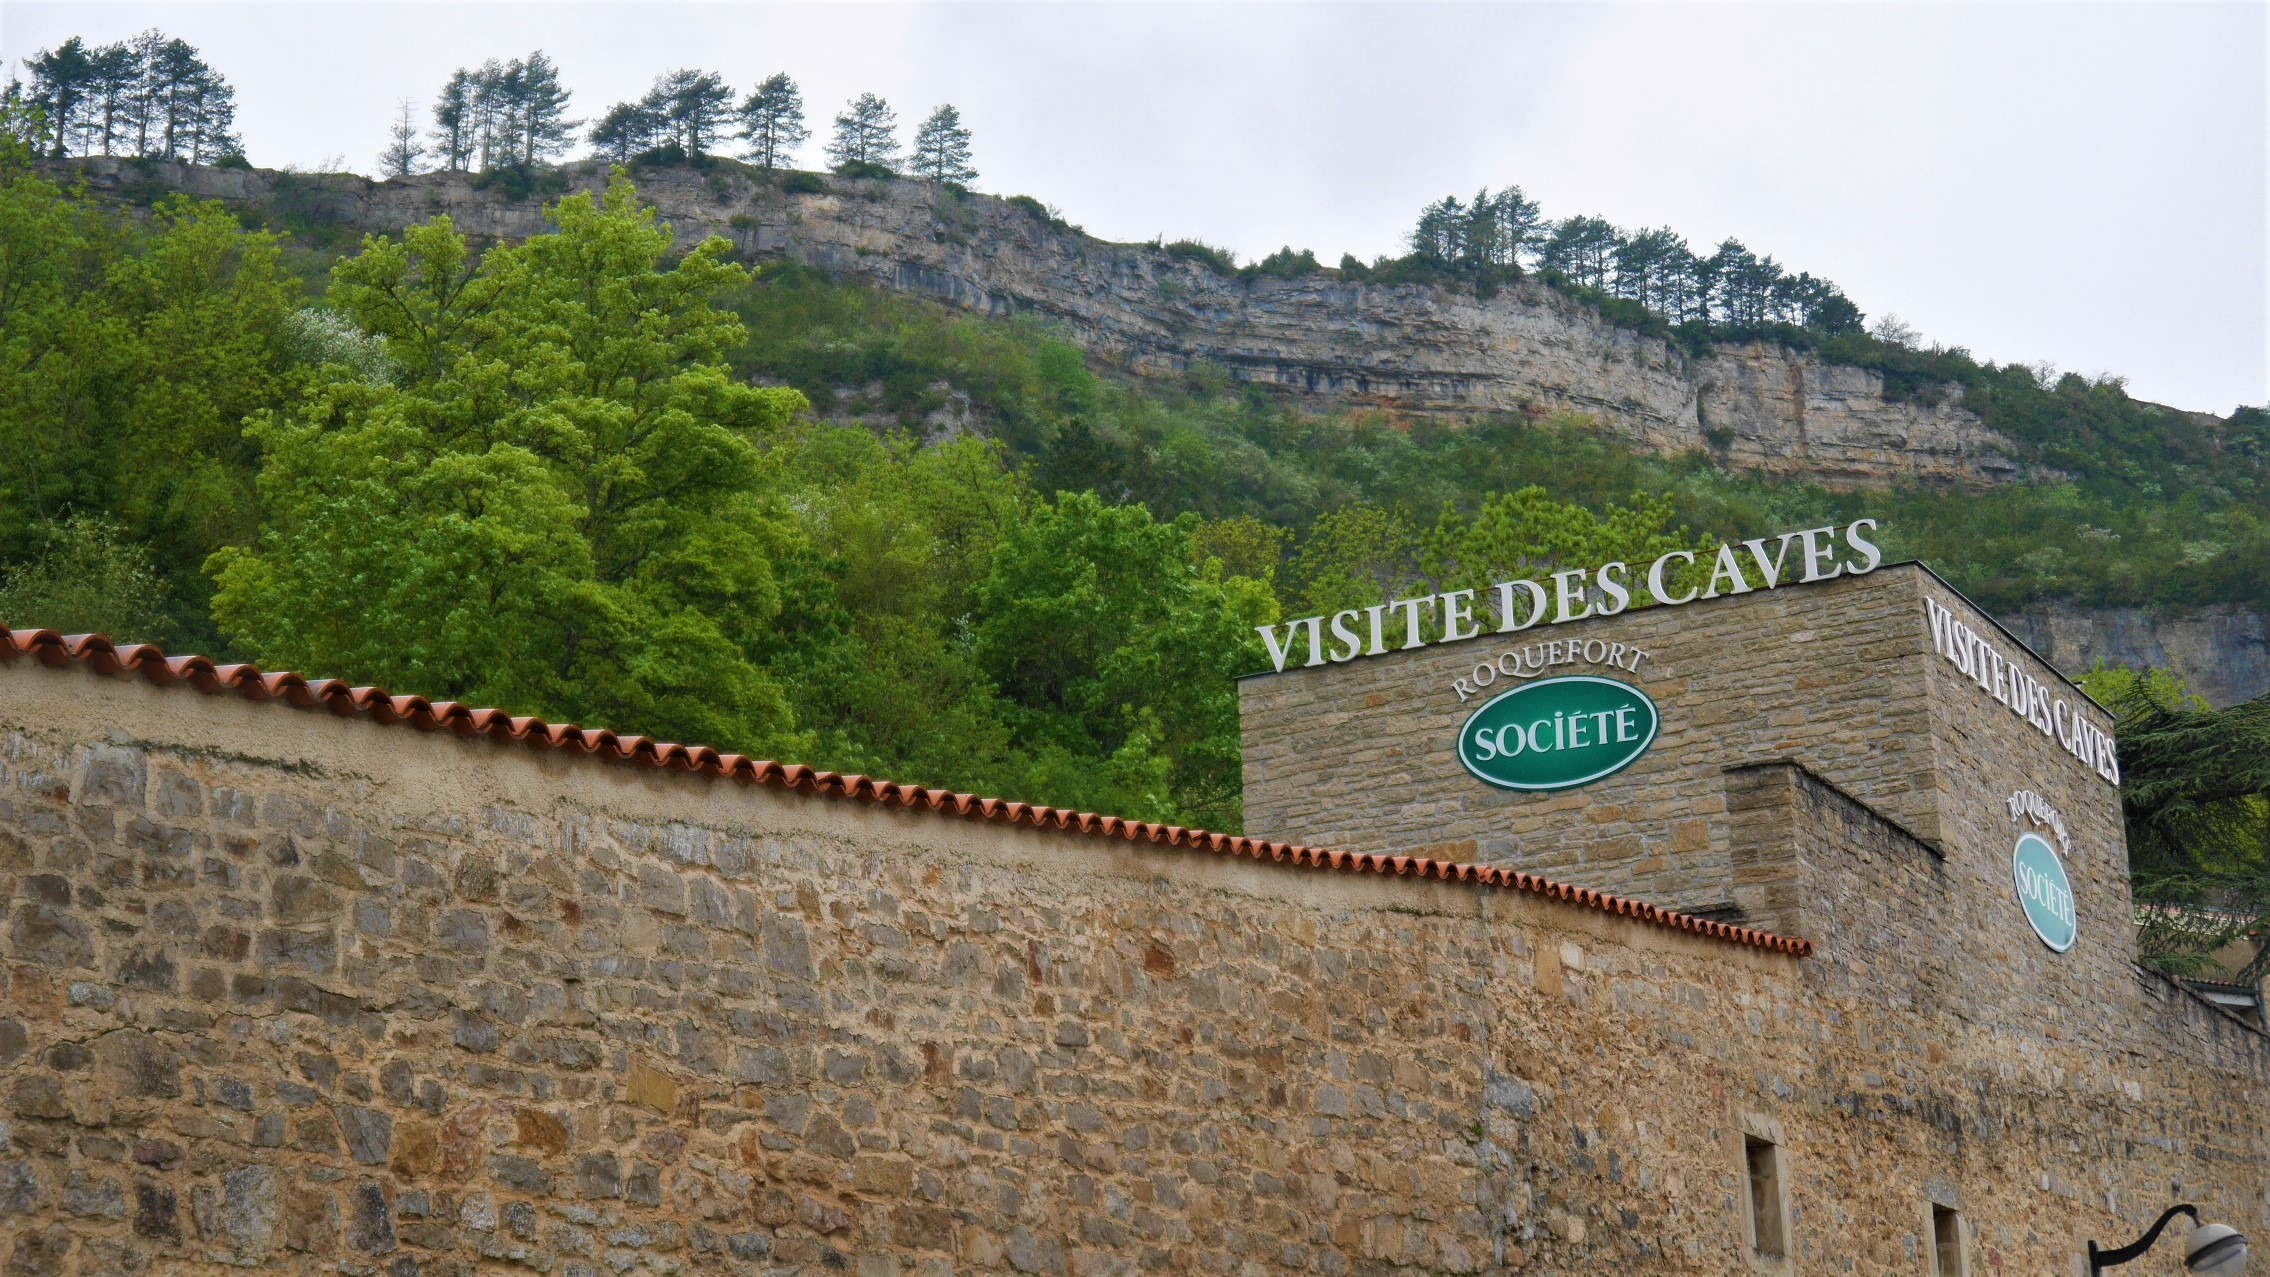 Aveyron Caves Roquefort Société visiter infos pratiques blog voyage france arpenter le chemin